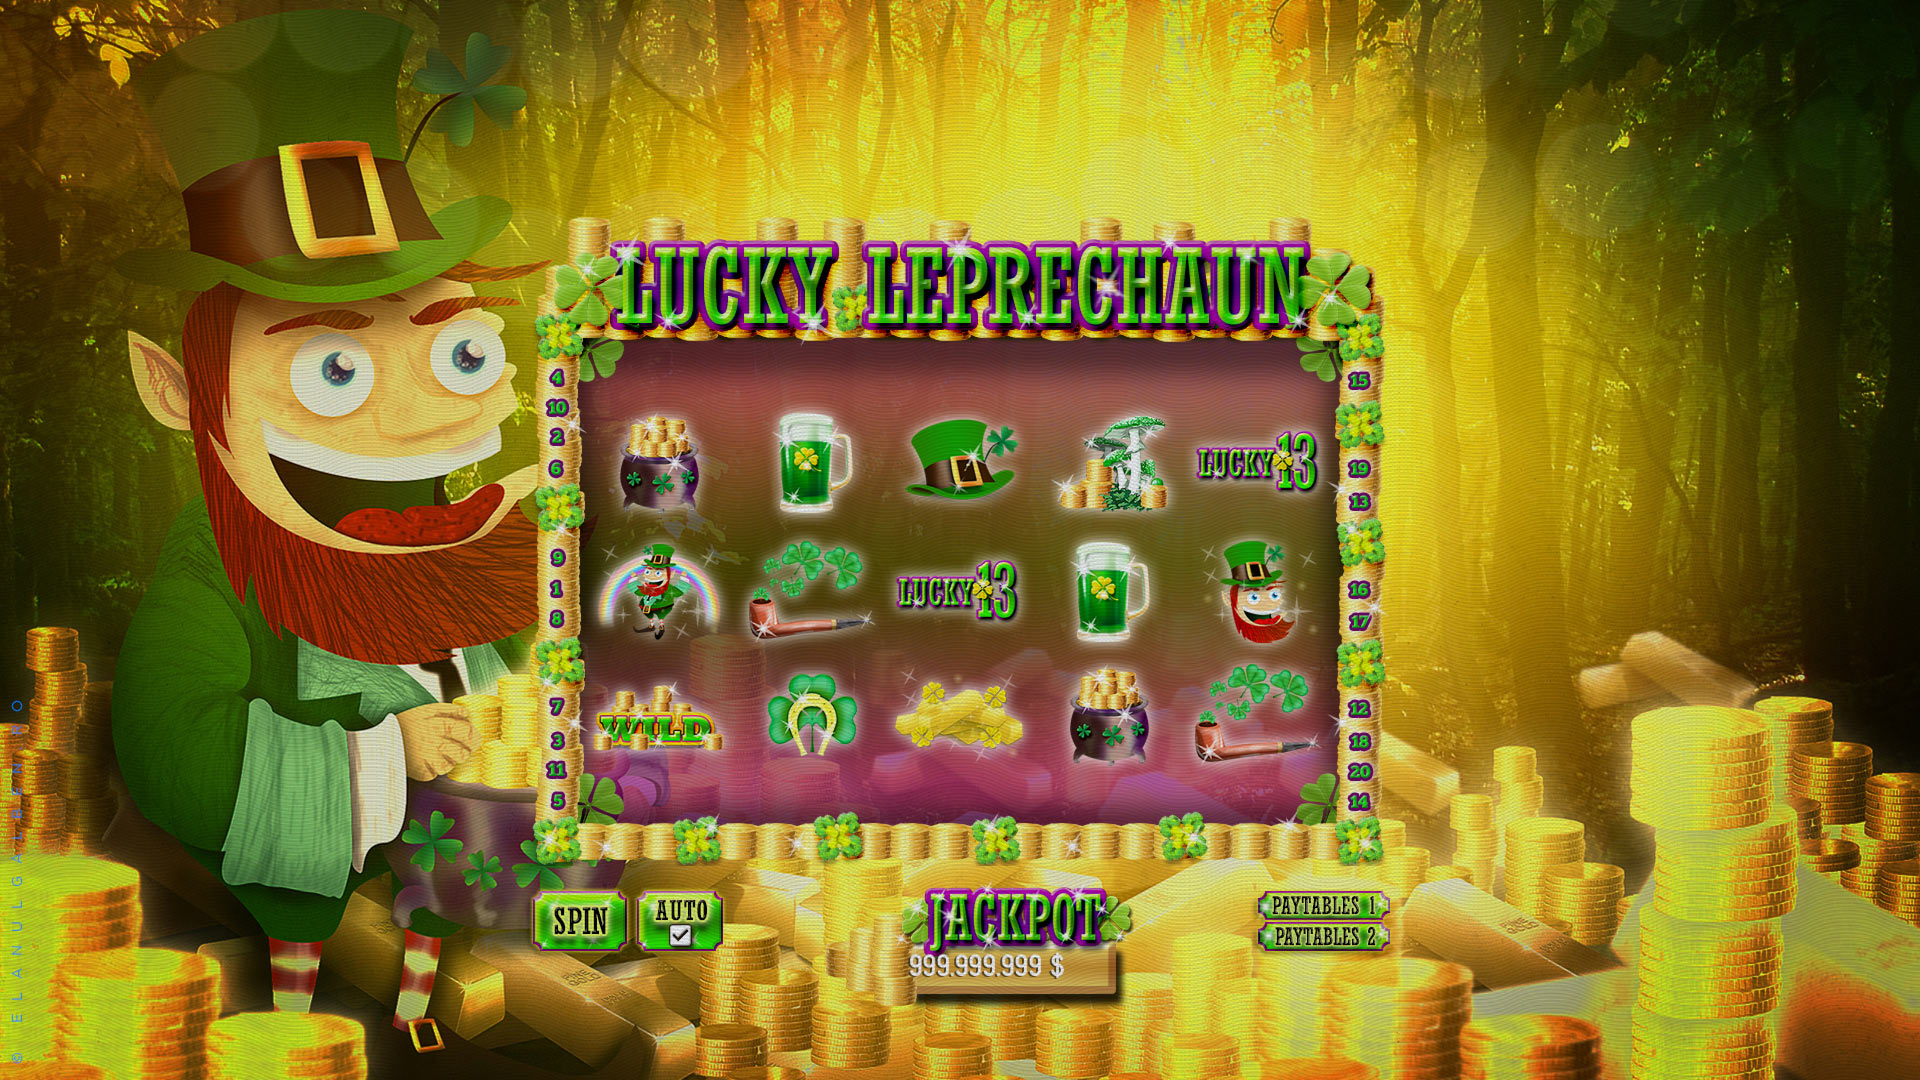 Online Casino Game Design - Slot machine game - Irish Lucky Leprechaun